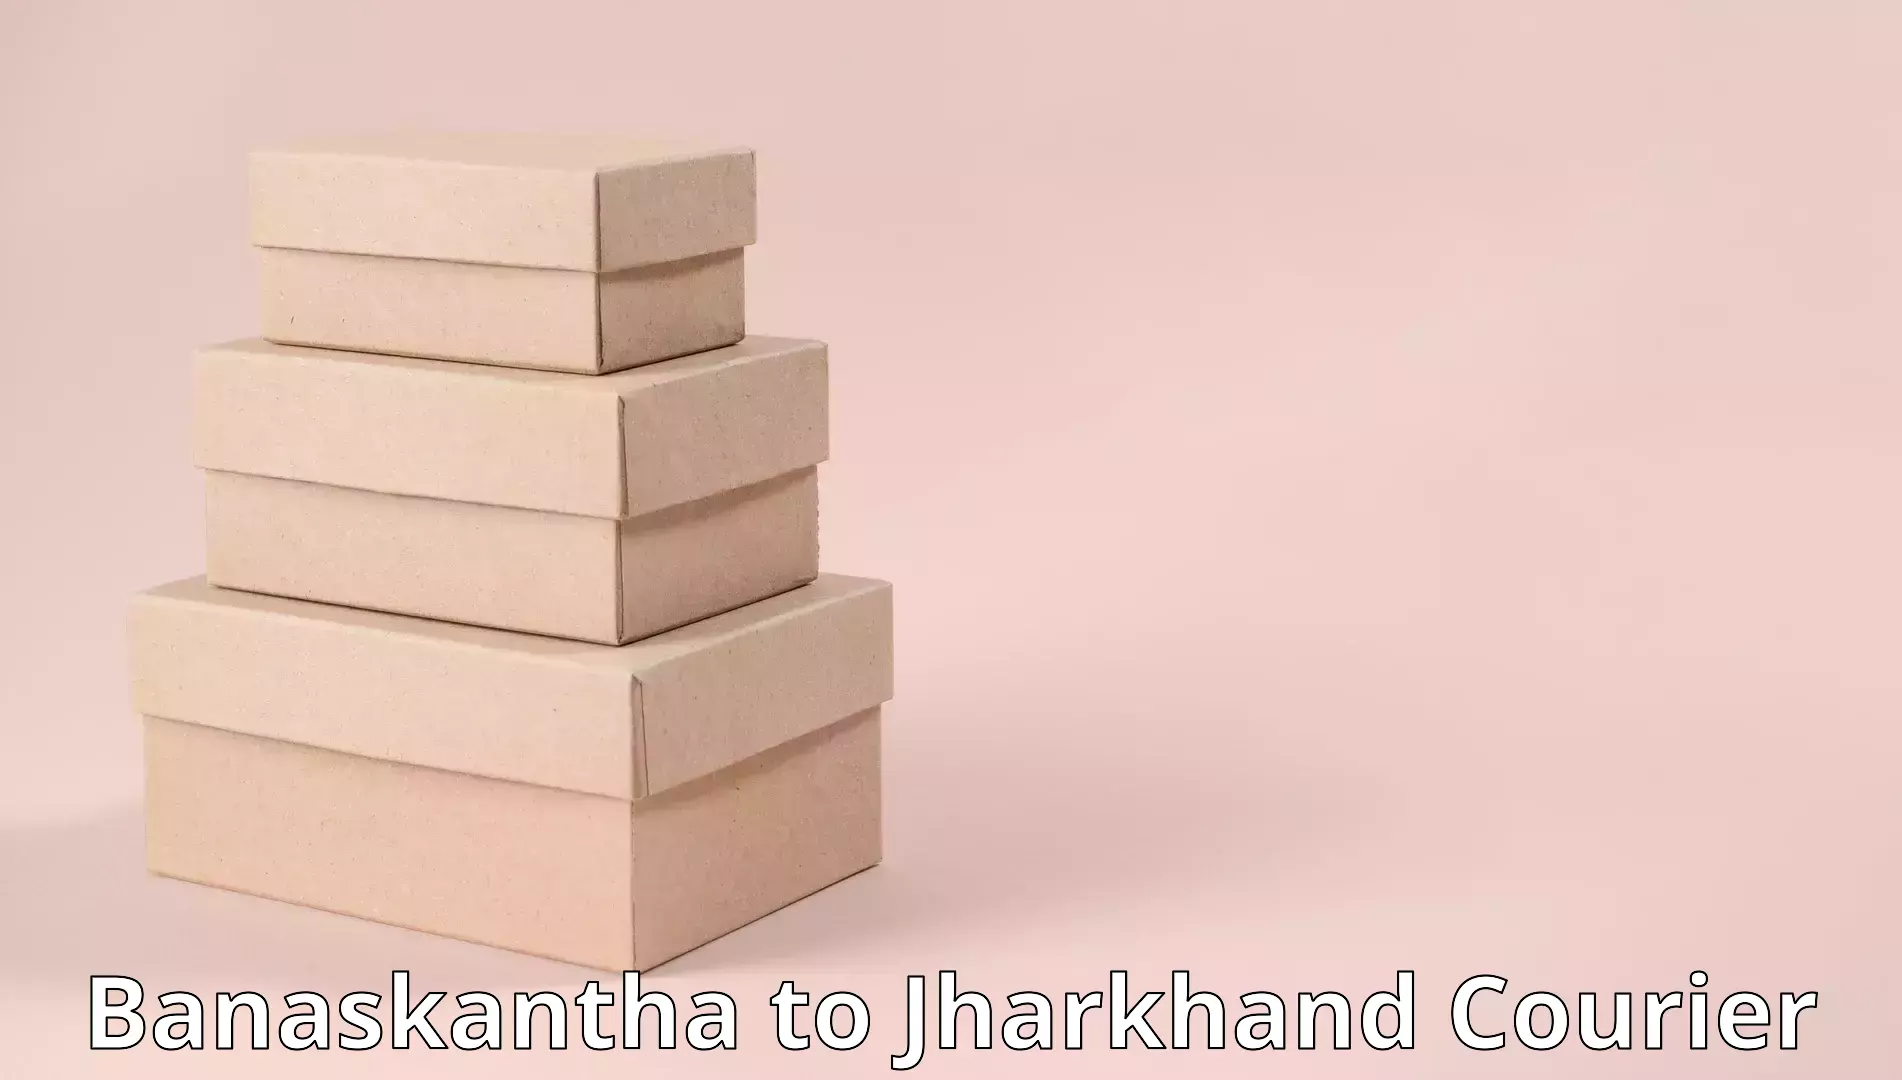 Efficient furniture shifting Banaskantha to Barharwa